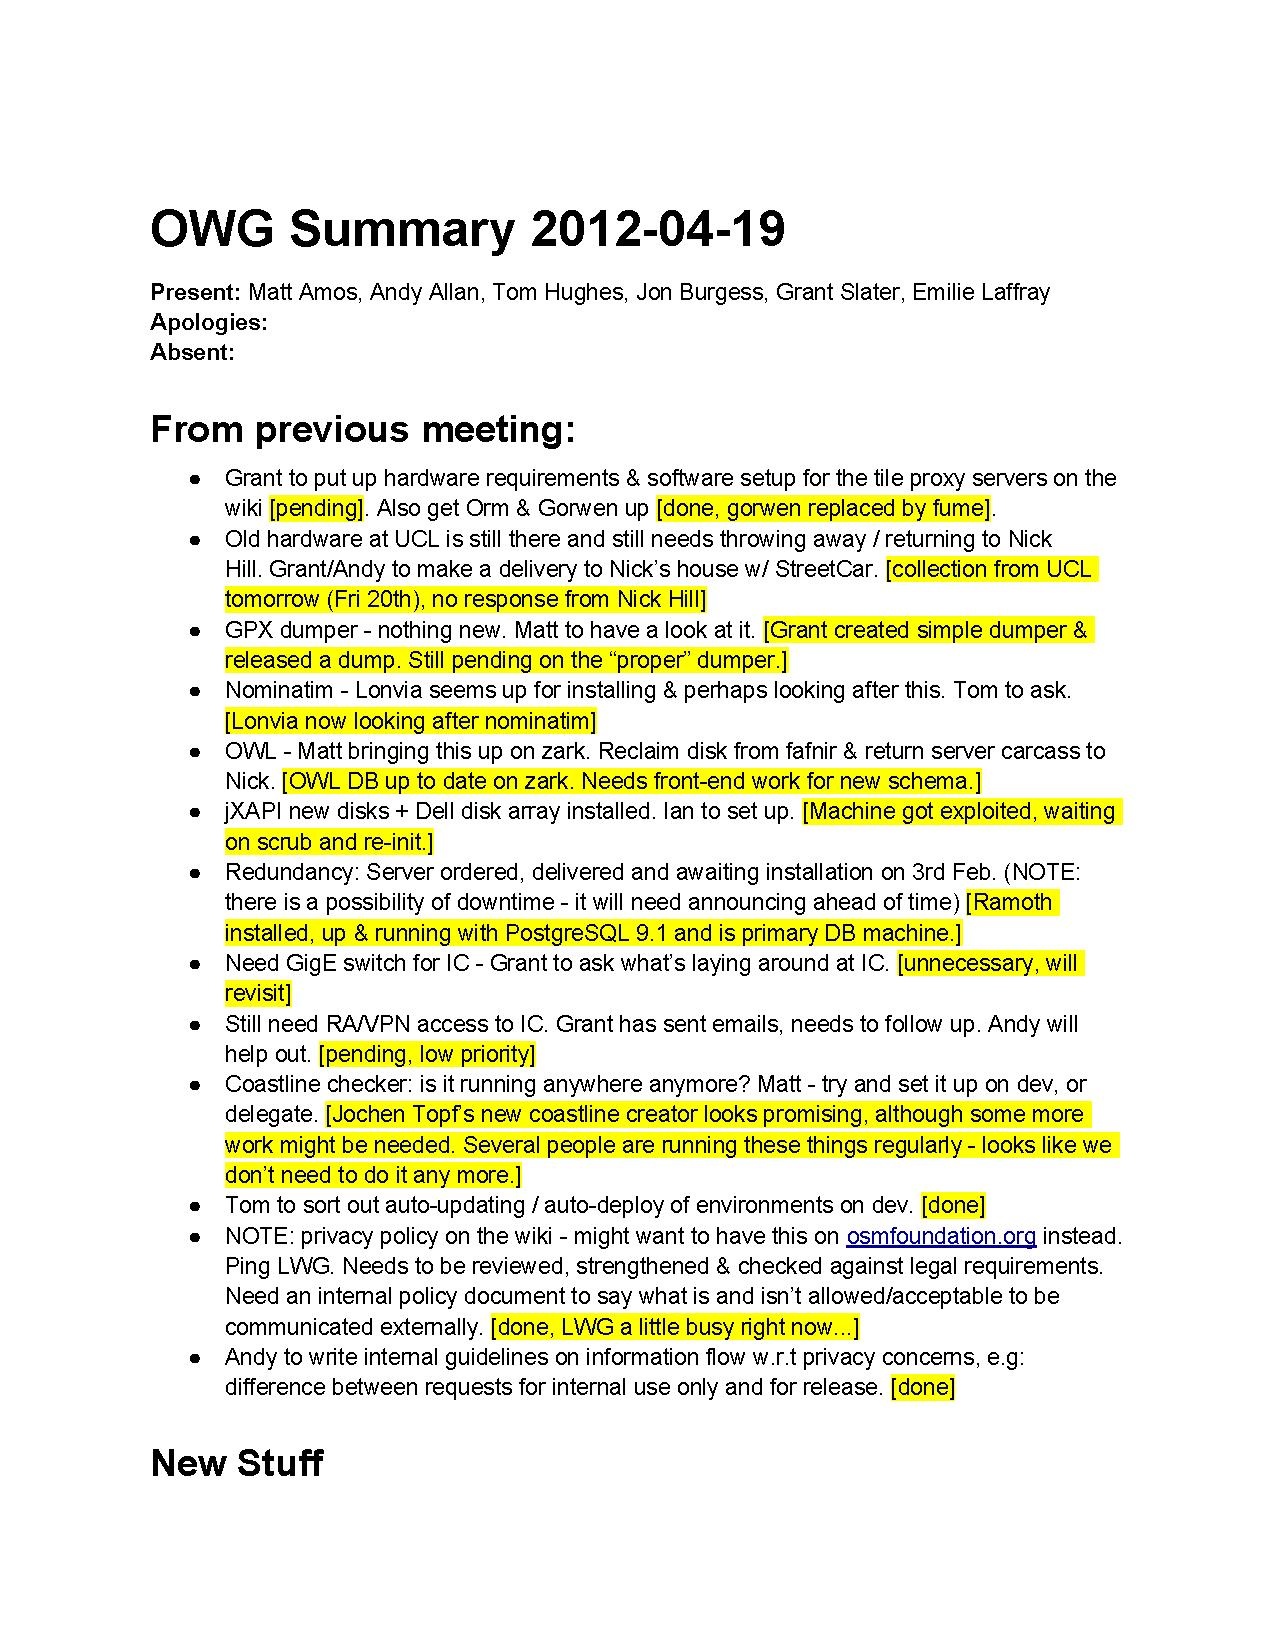 OWG Summary 2012-04-19.pdf